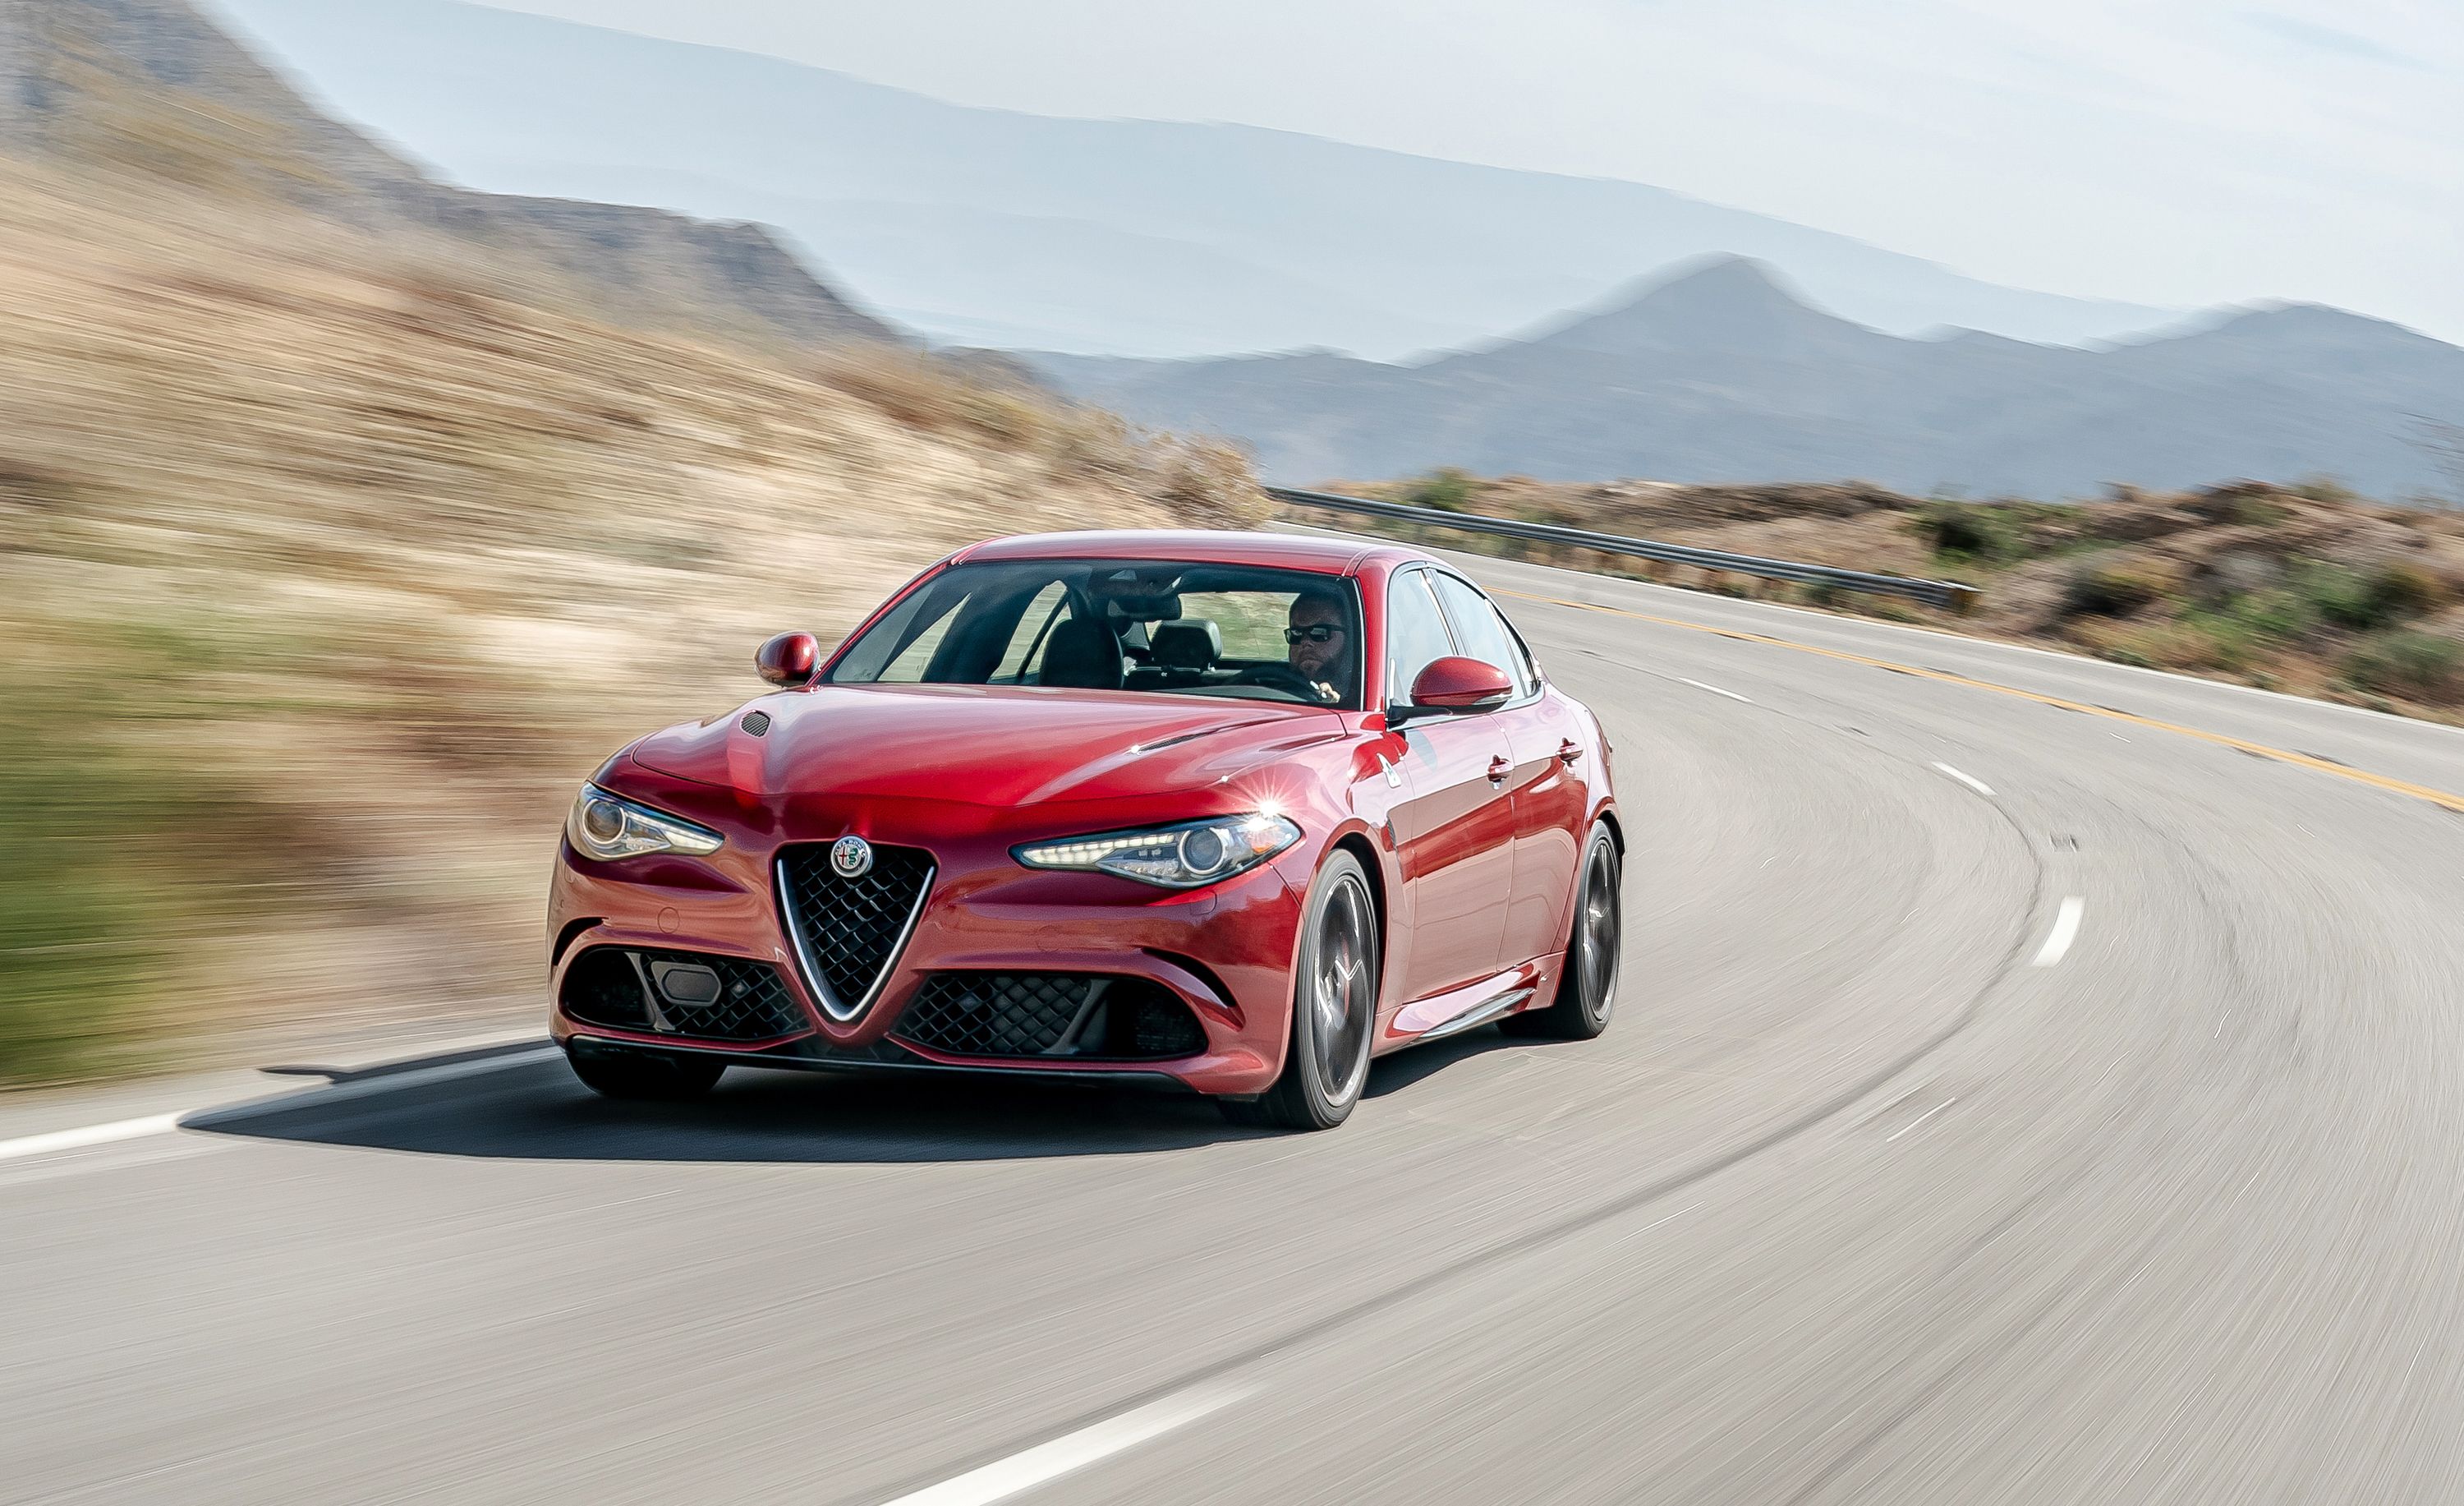 How Reliable Is the 2018 Alfa Romeo Giulia Quadrifoglio?